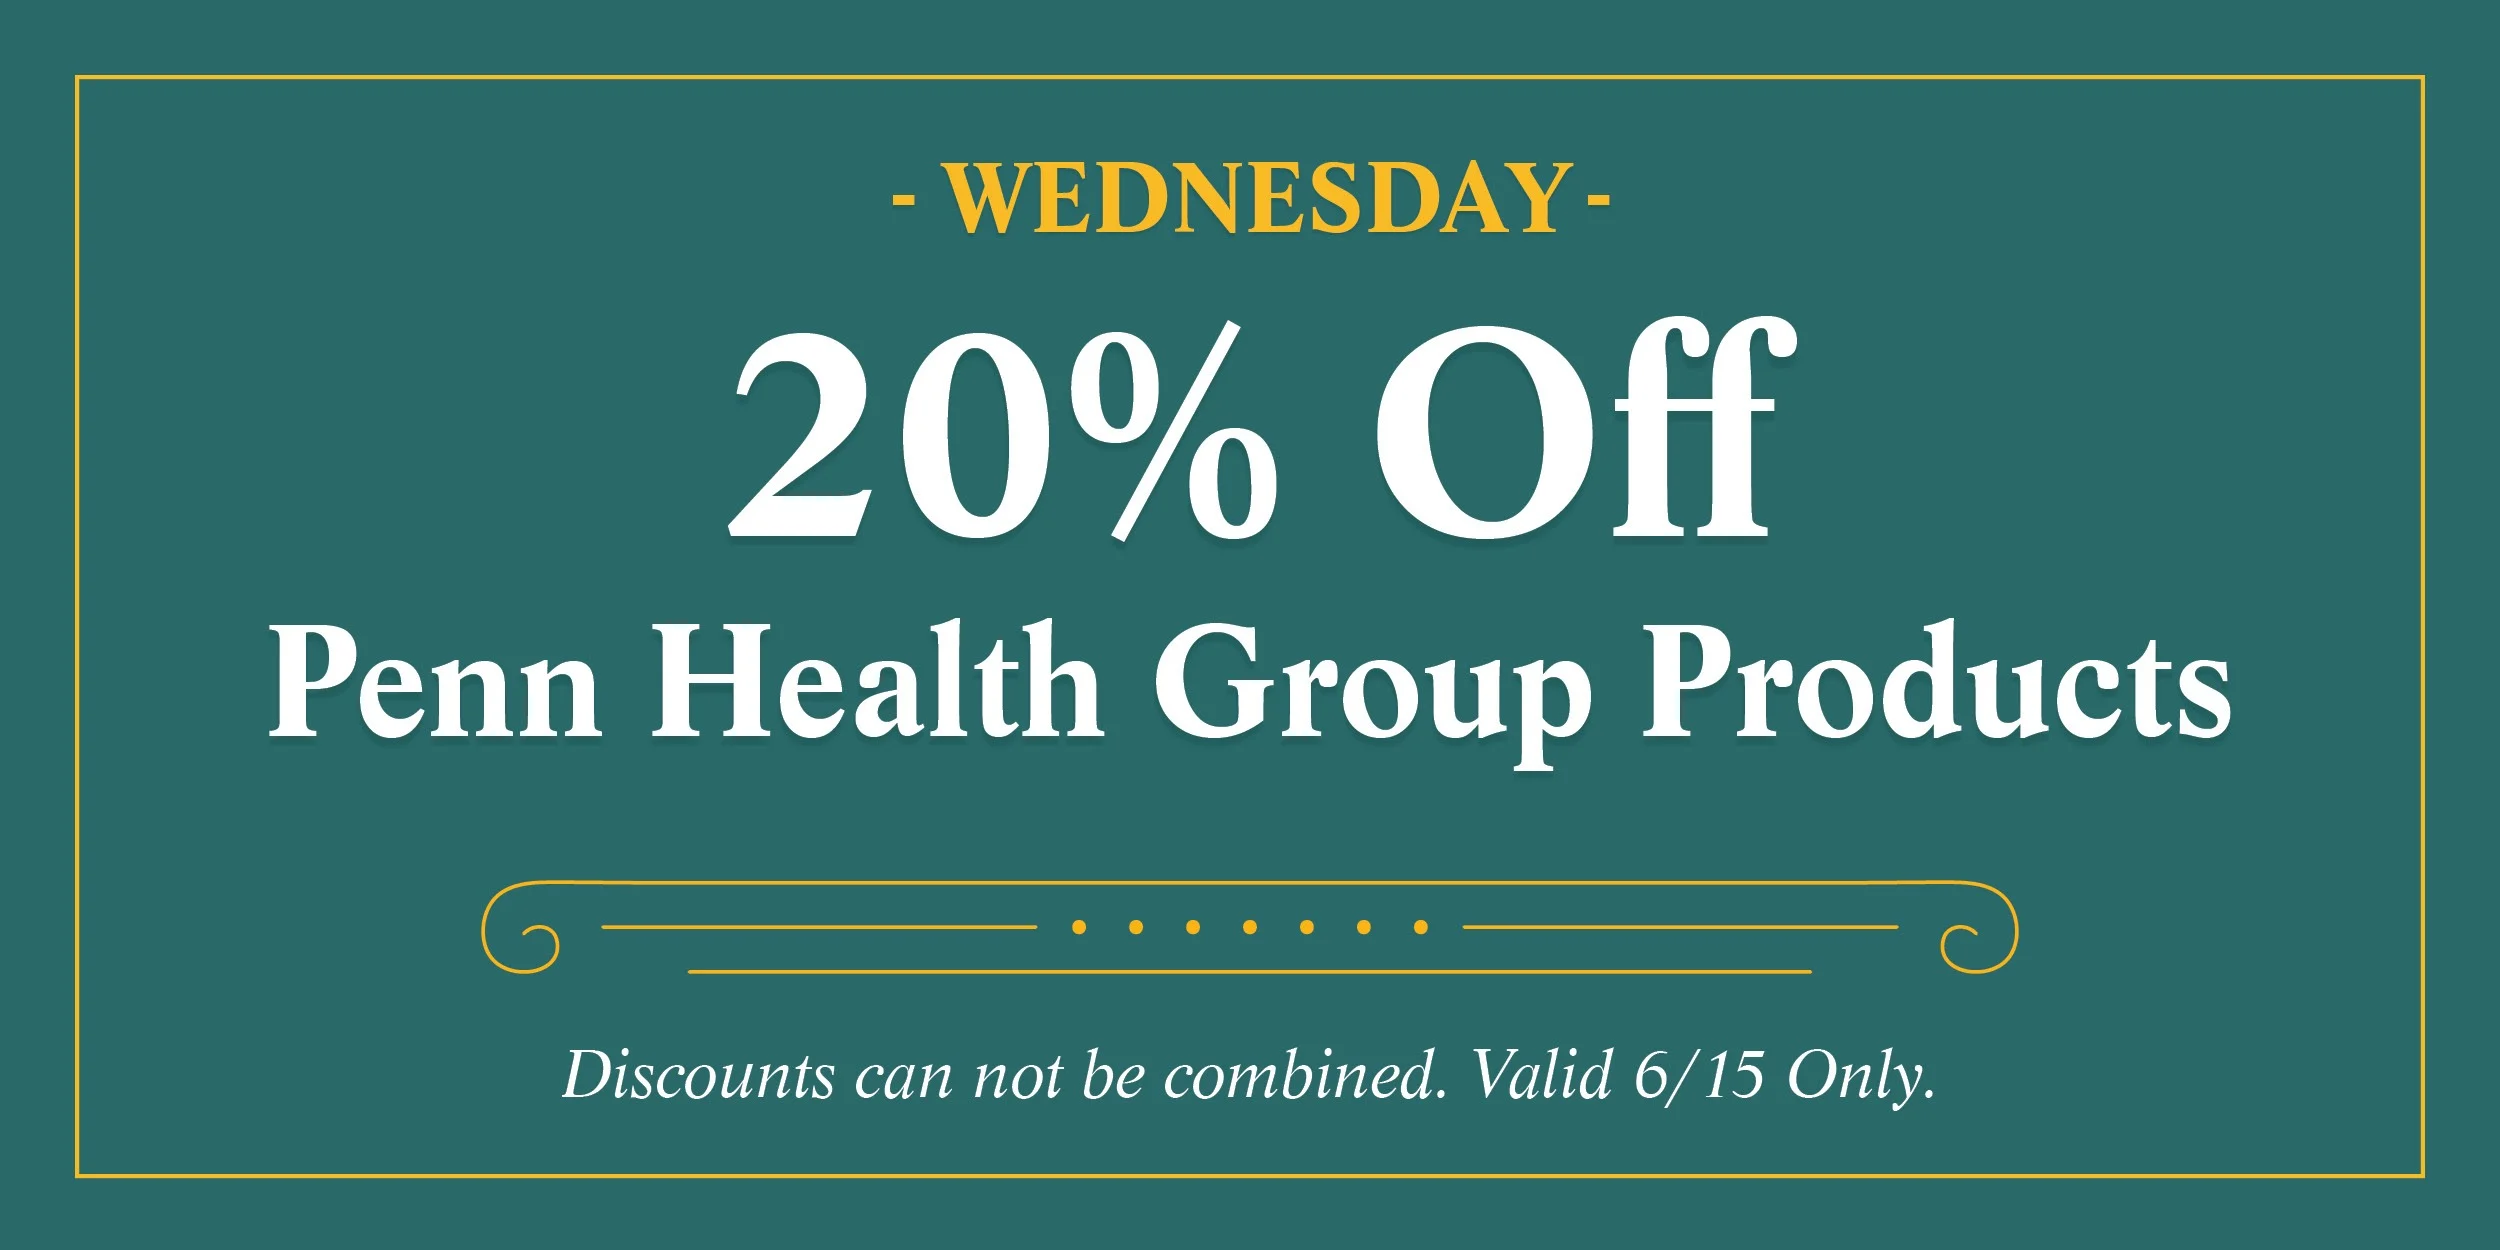 Penn Health Group 20% Off